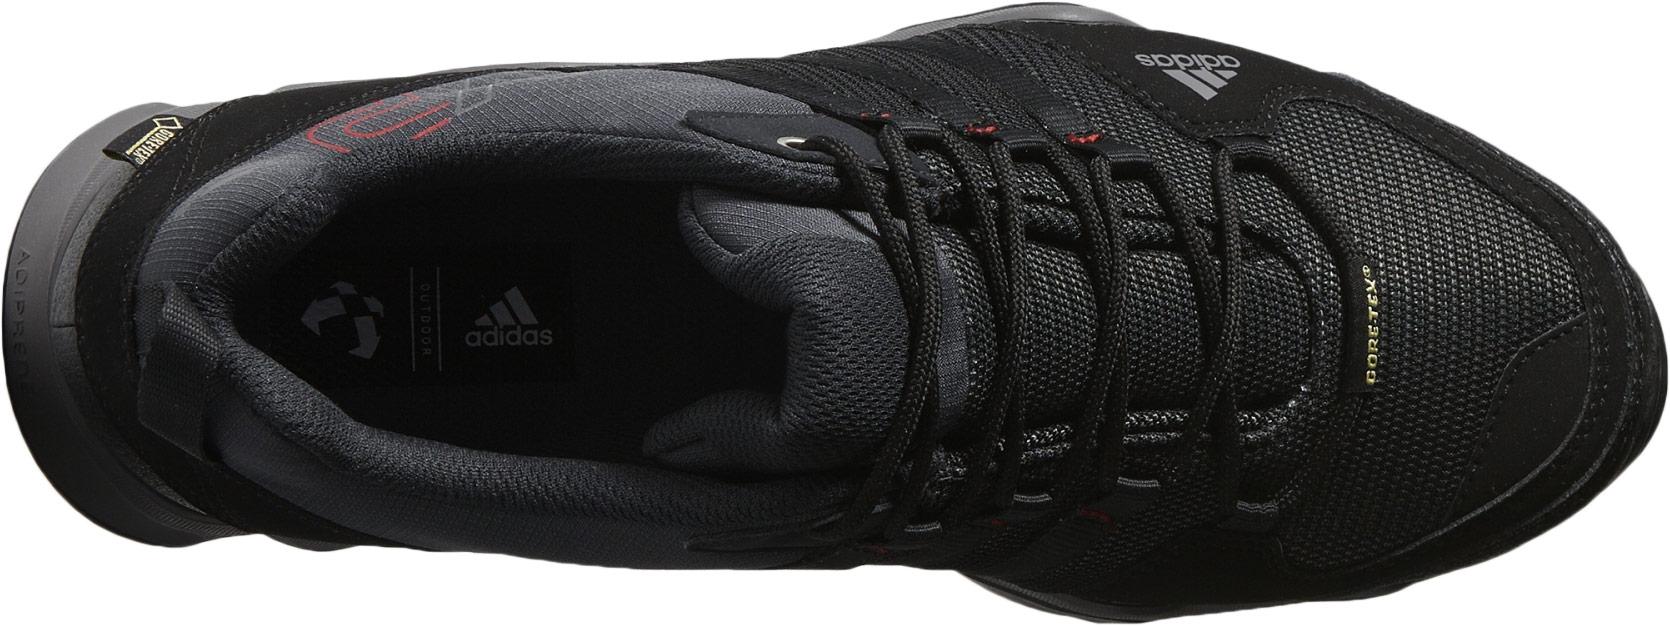 AX2 GTX - Pánska outdoorová obuv